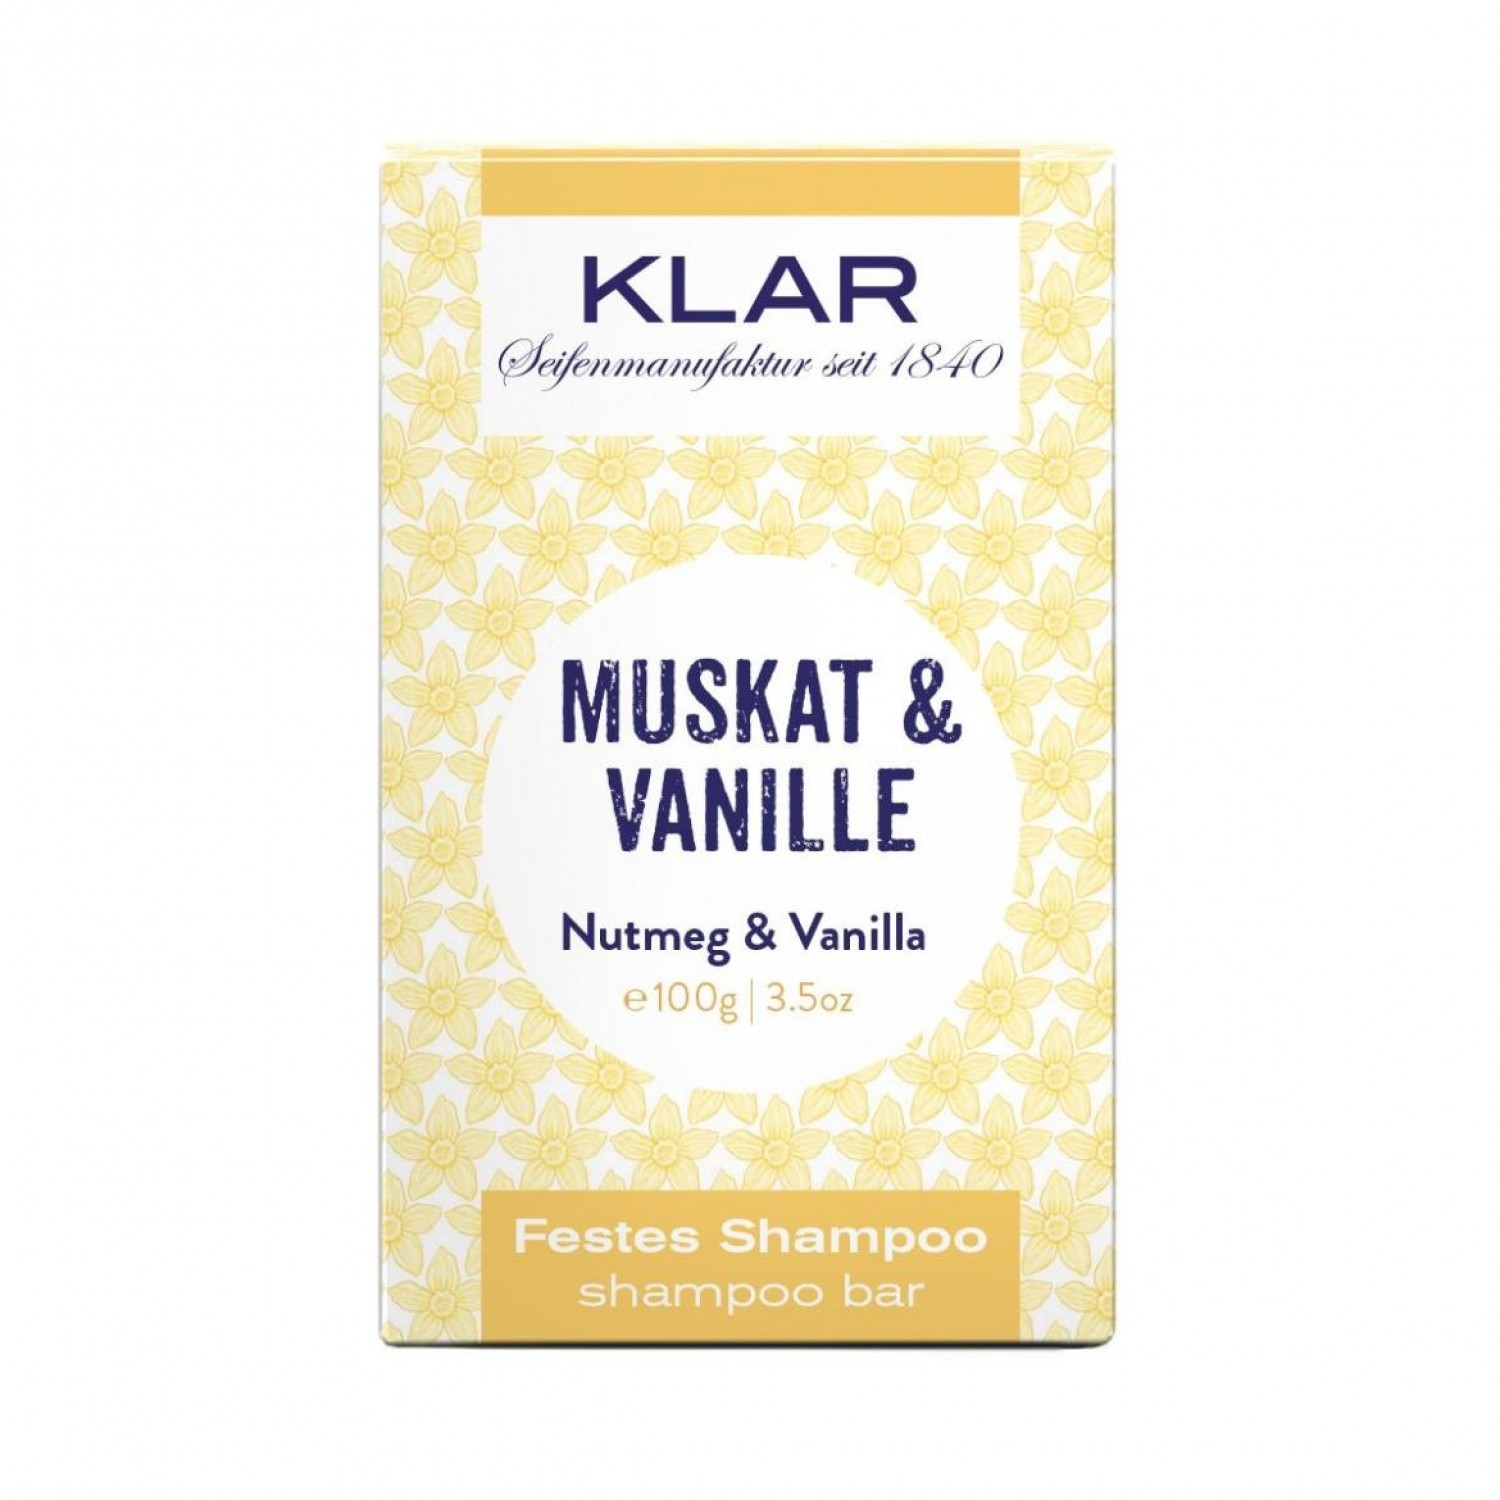 Klar’s Vegan Shampoo Bar Nutmeg & Vanilla